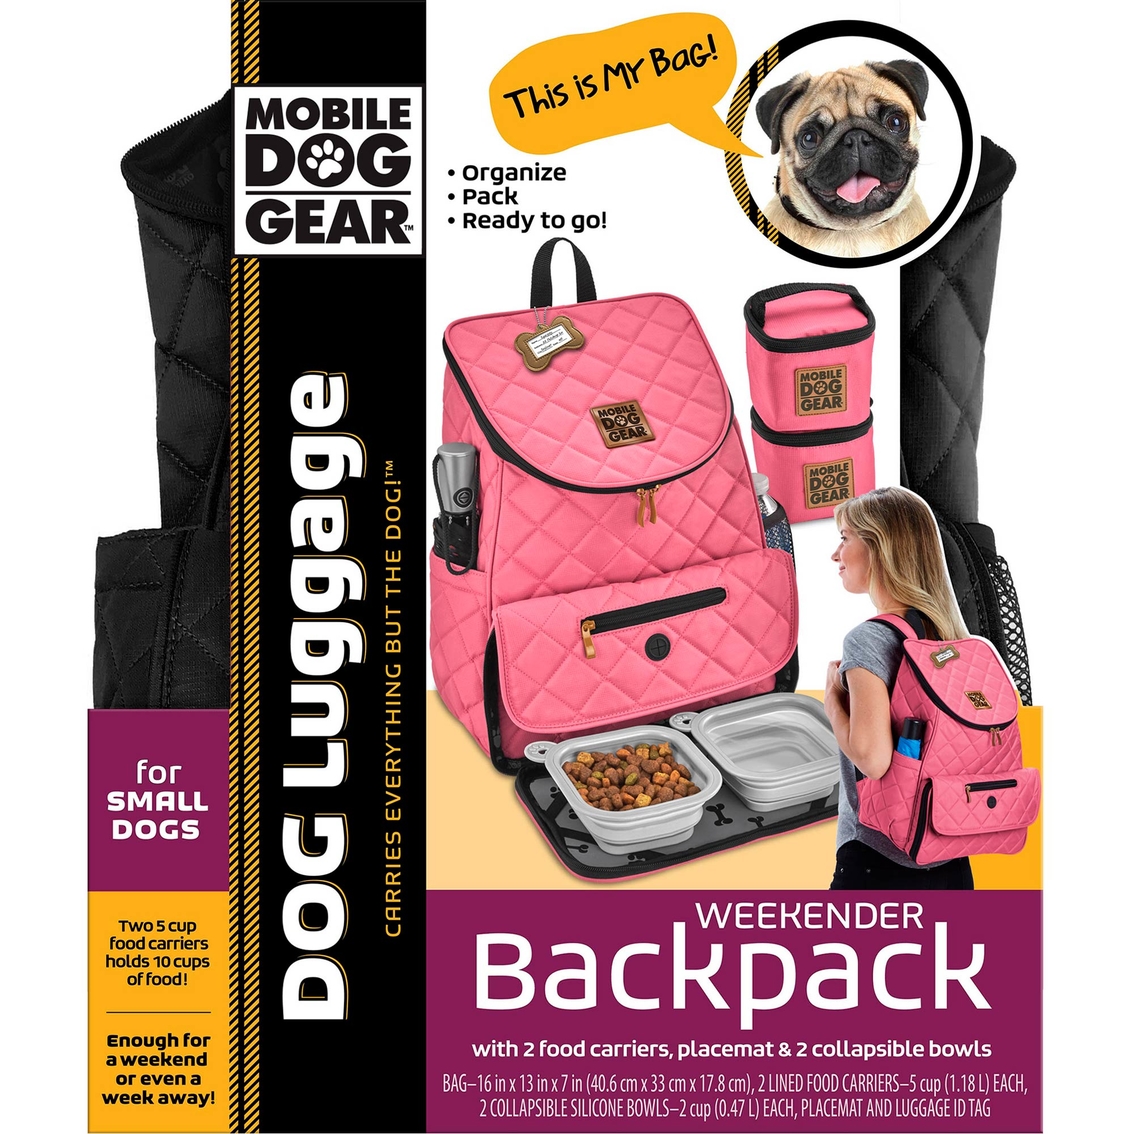 Mobile Dog Gear Weekender Backpack - Image 7 of 8